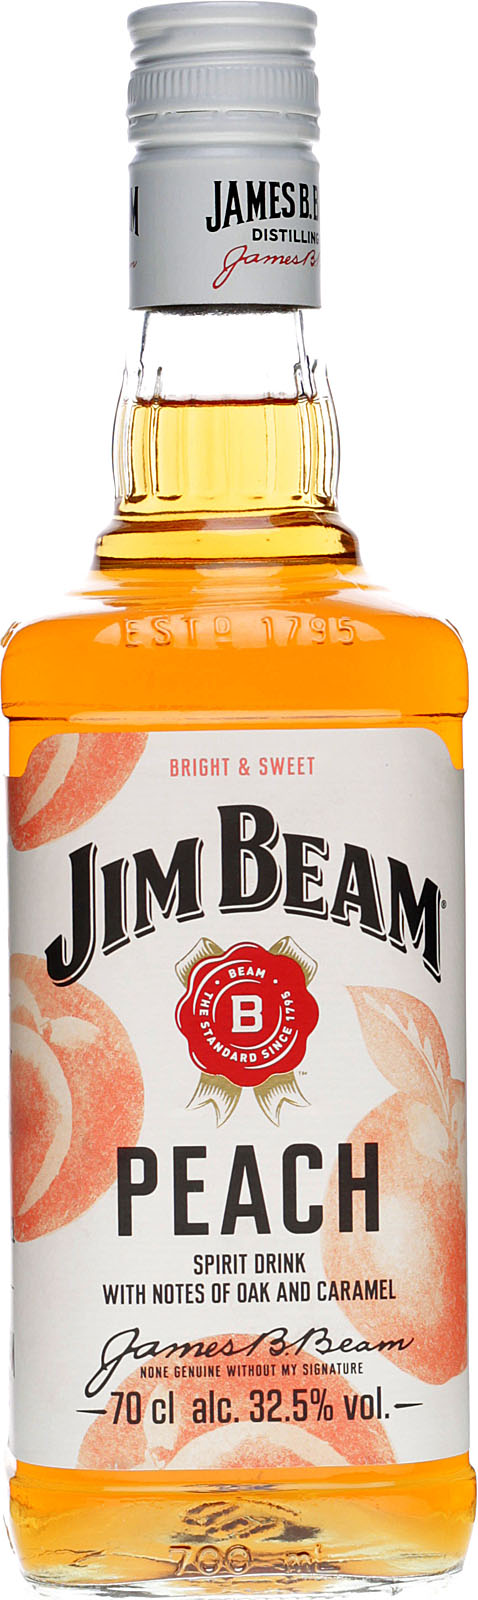 Peach Vol. % 0,7 Beam Shop 32,5 im Jim Liter